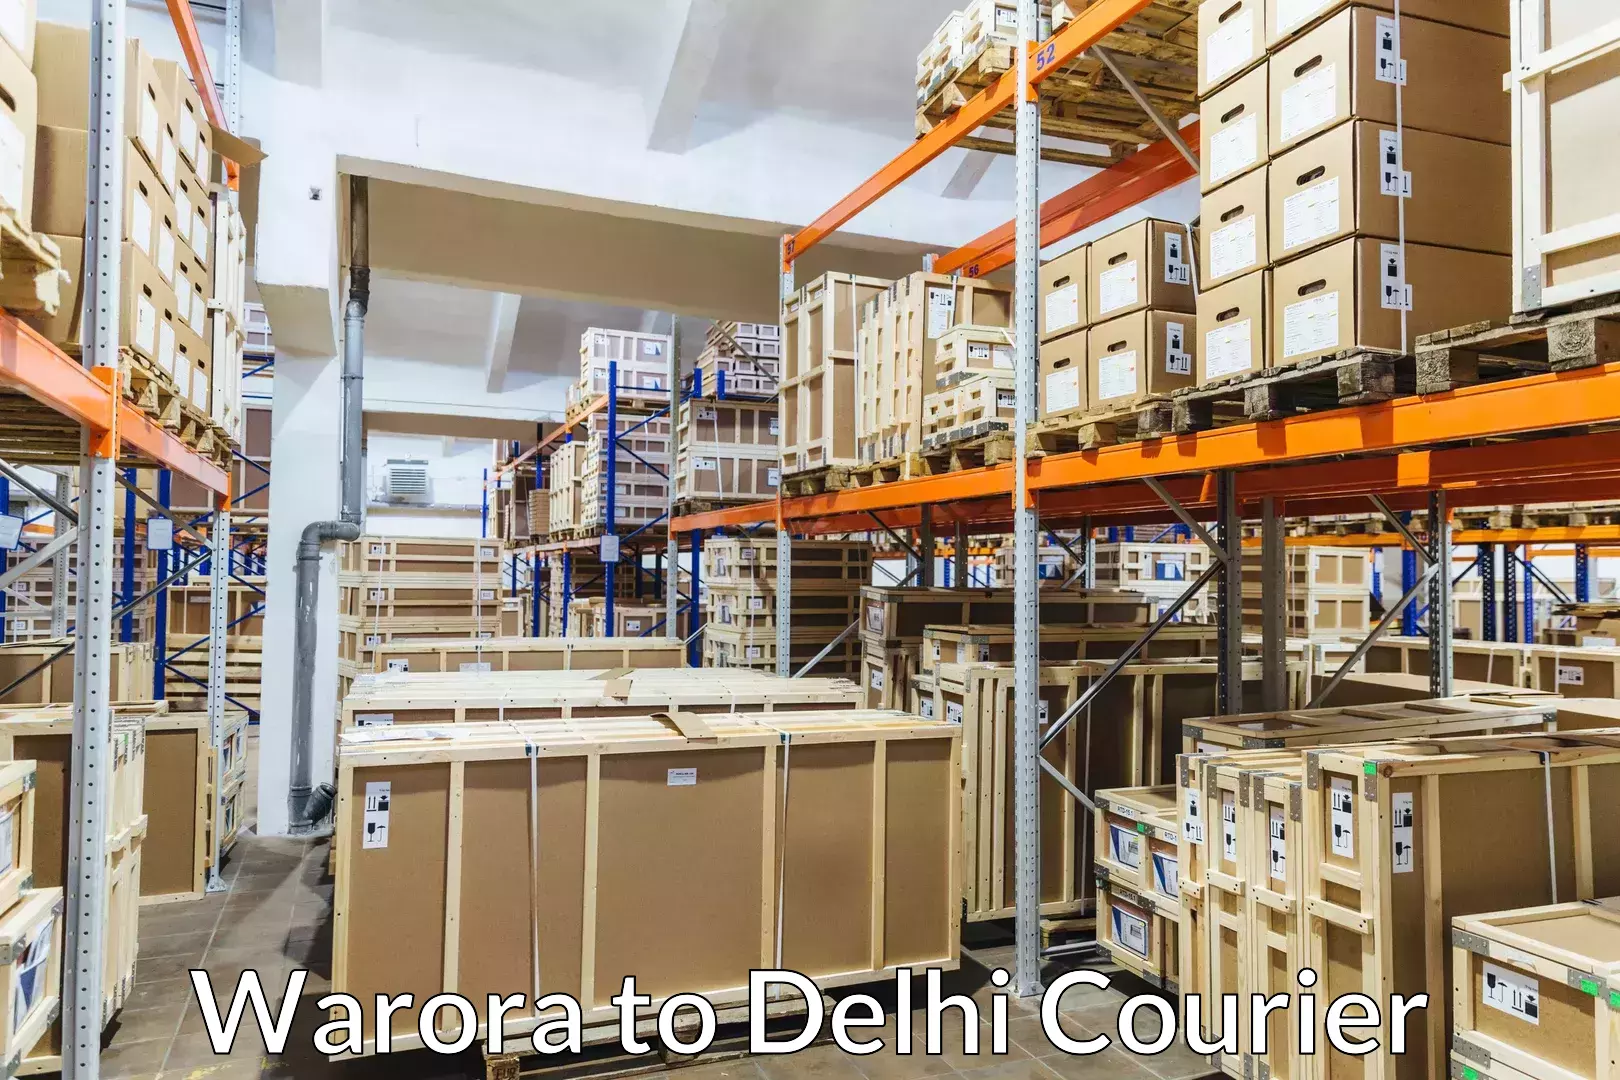 Multi-destination luggage transport Warora to Delhi